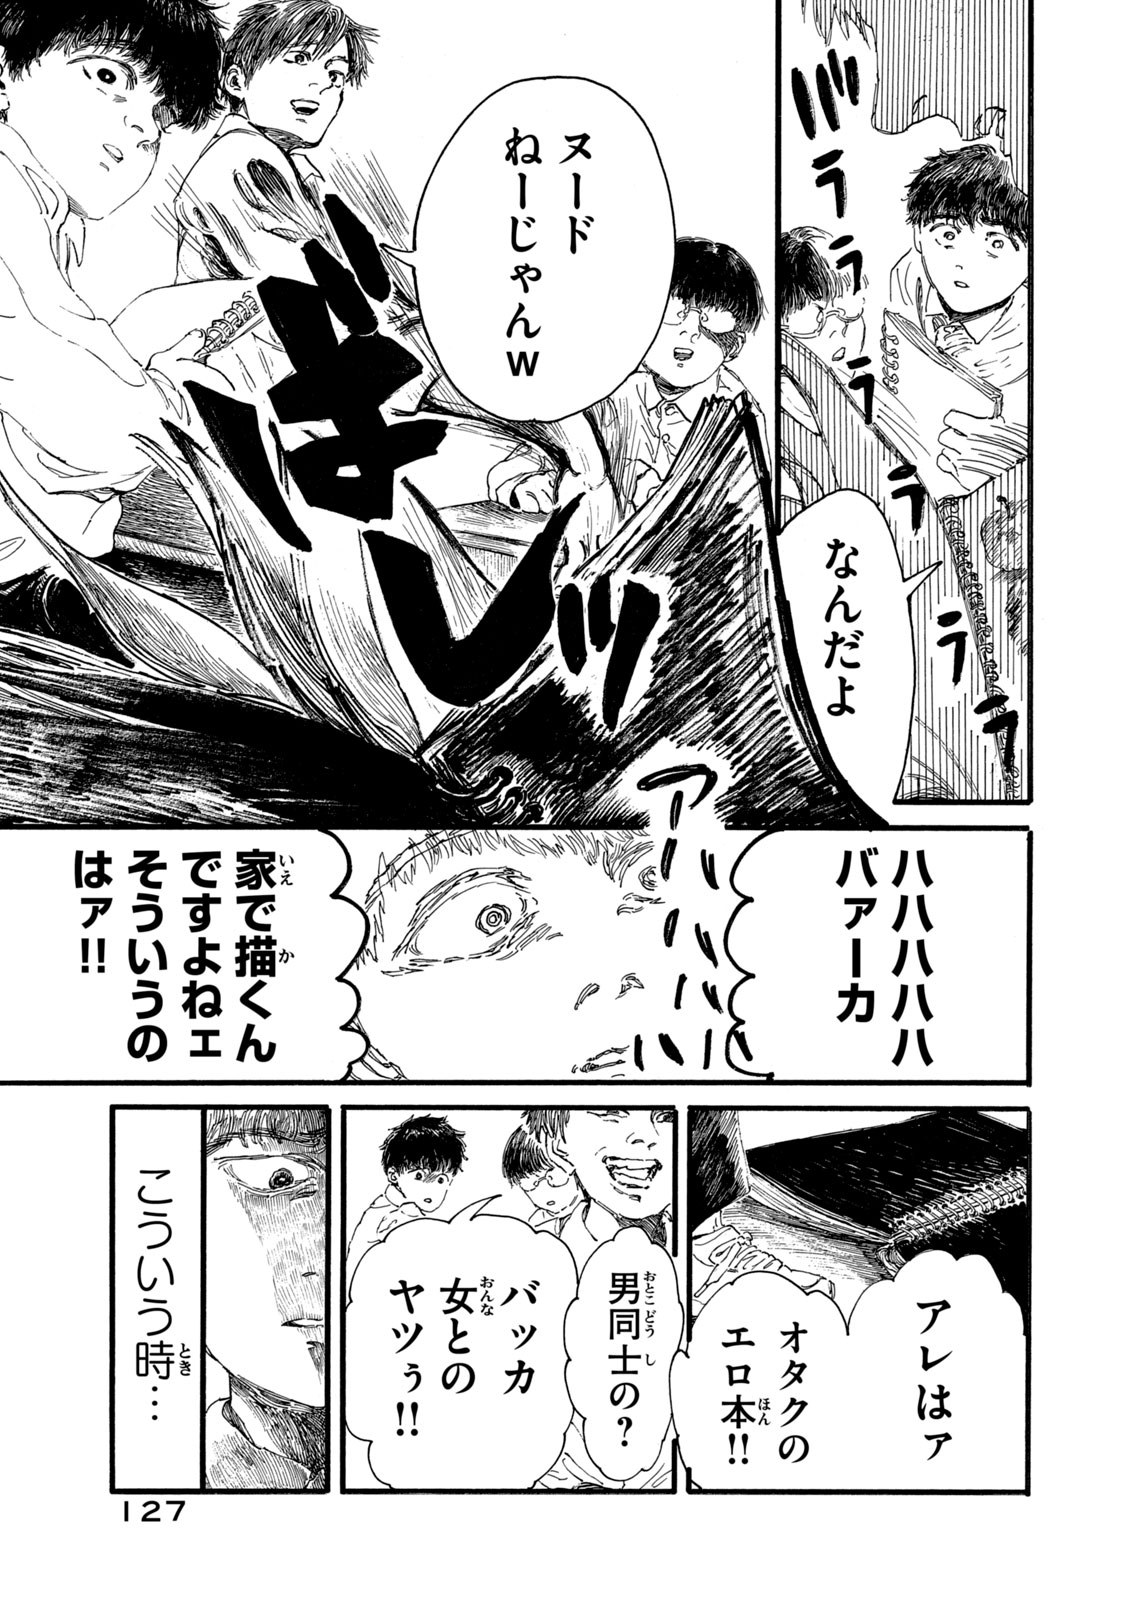 Watashi no Hara no Naka no Bakemono - Chapter 6 - Page 5